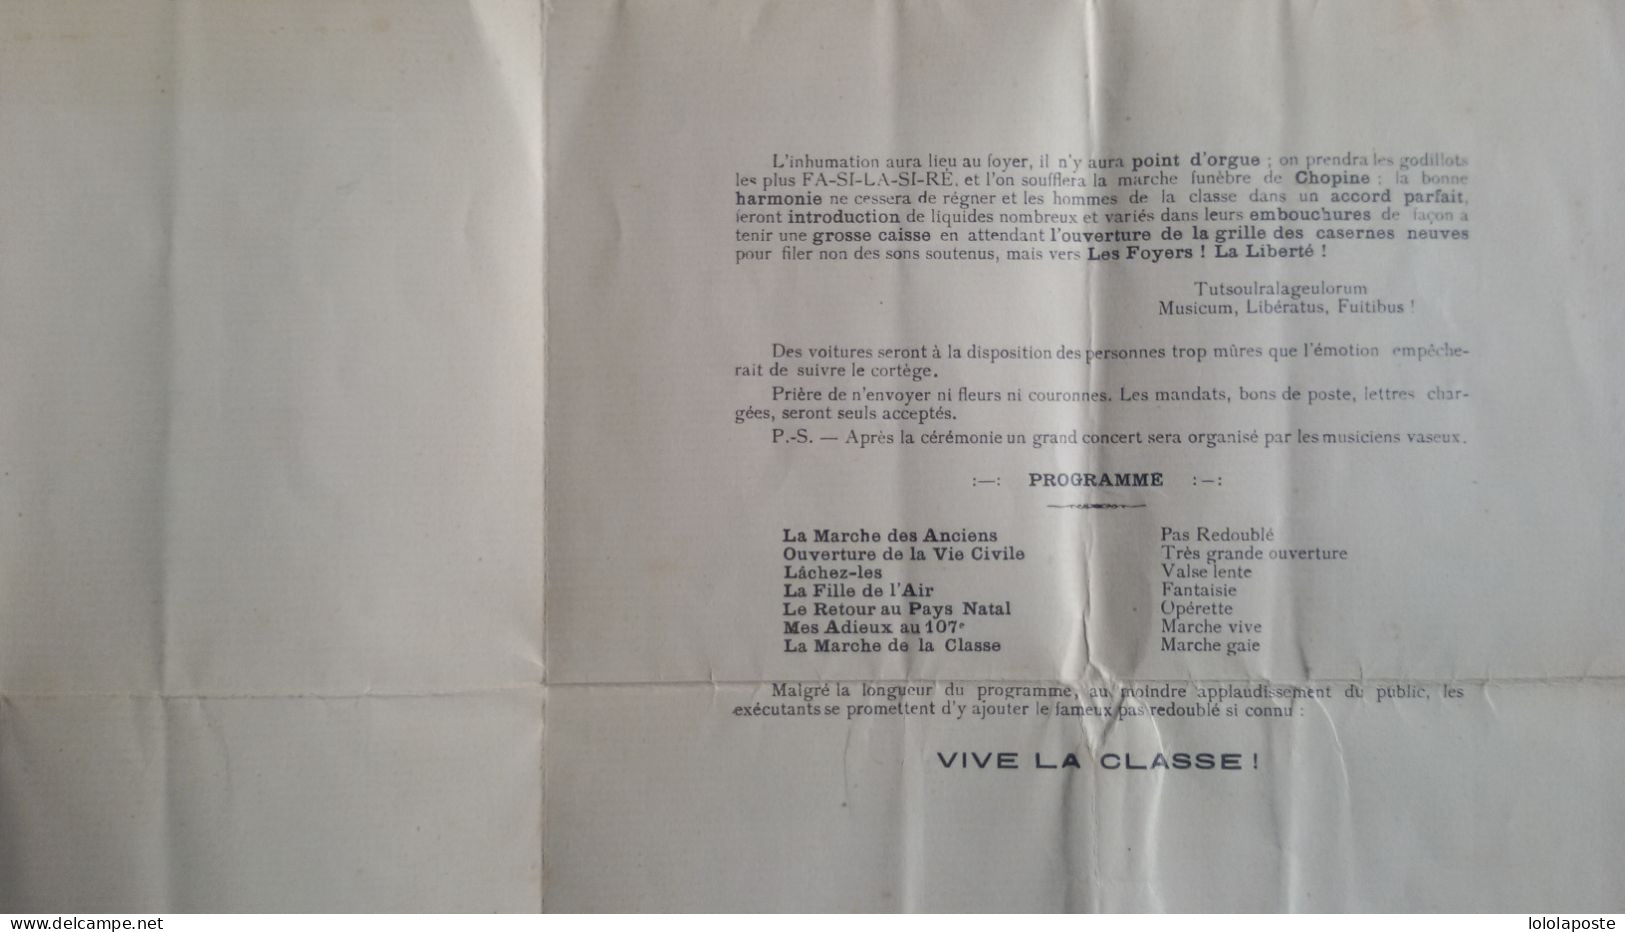 PERE CENT Du 107ème Régiment D'infanterie D'Angoulème En 1928 - 2 Photos - Prix De Départ 1€ - Documentos